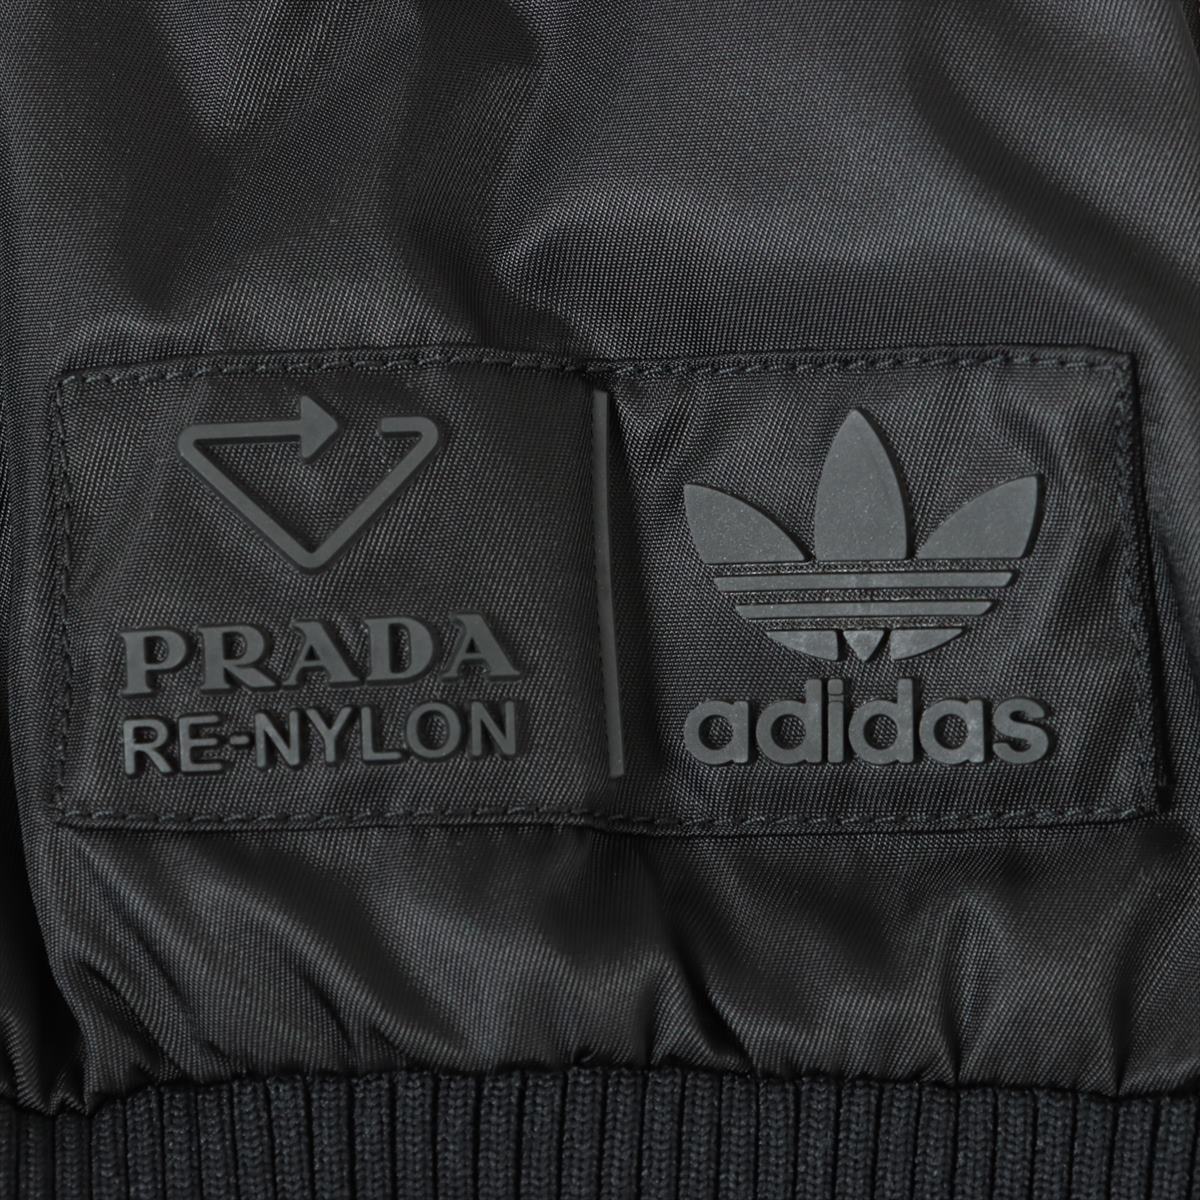 Prada x Adidas Re Nylon Re Nylon 21AW Nylon Blouson 46 Men's Black  SGB936